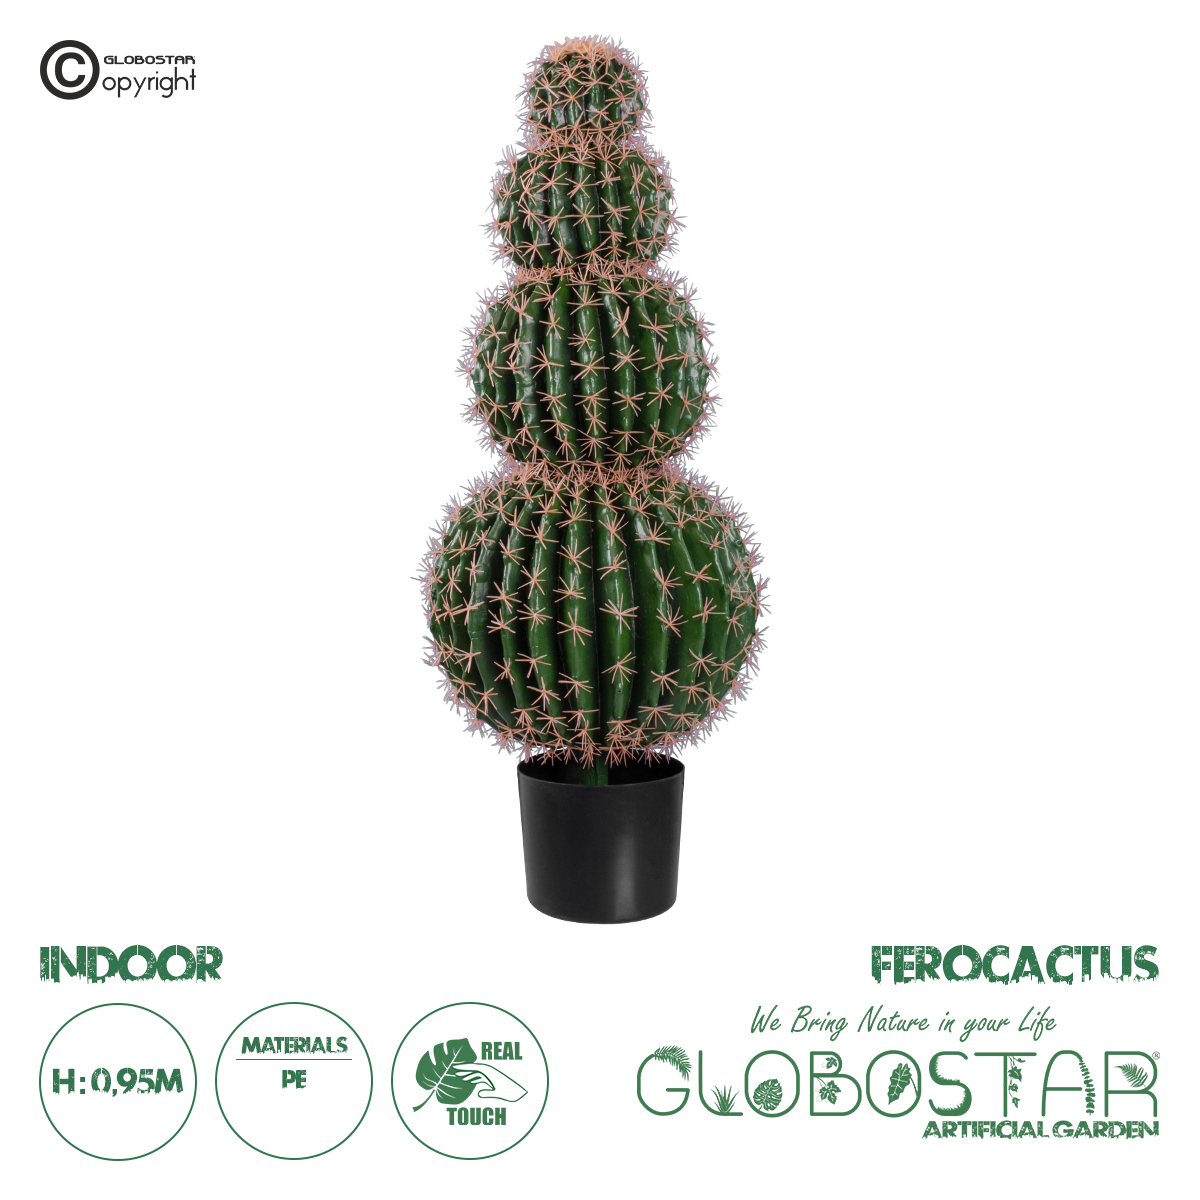 GloboStar® Artificial Garden FEROCACTUS 20138 Τεχνητό Διακοσμητικό Φυτό Φερόκακτος Υ95cm